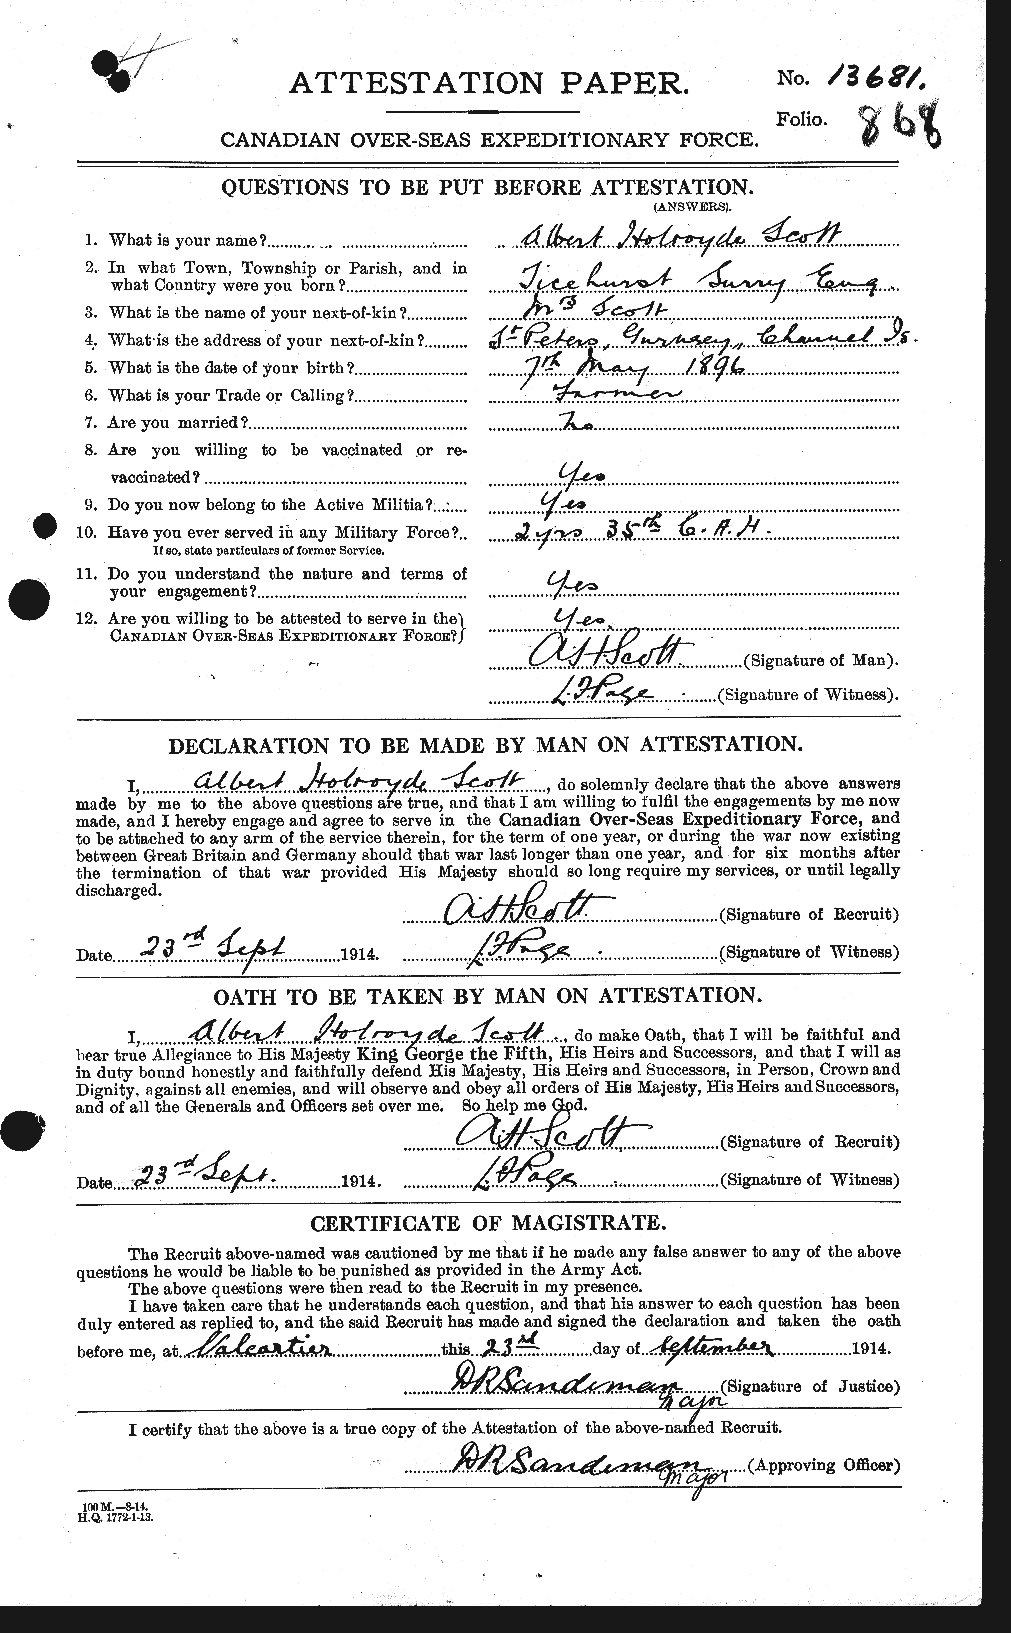 Dossiers du Personnel de la Première Guerre mondiale - CEC 086844a